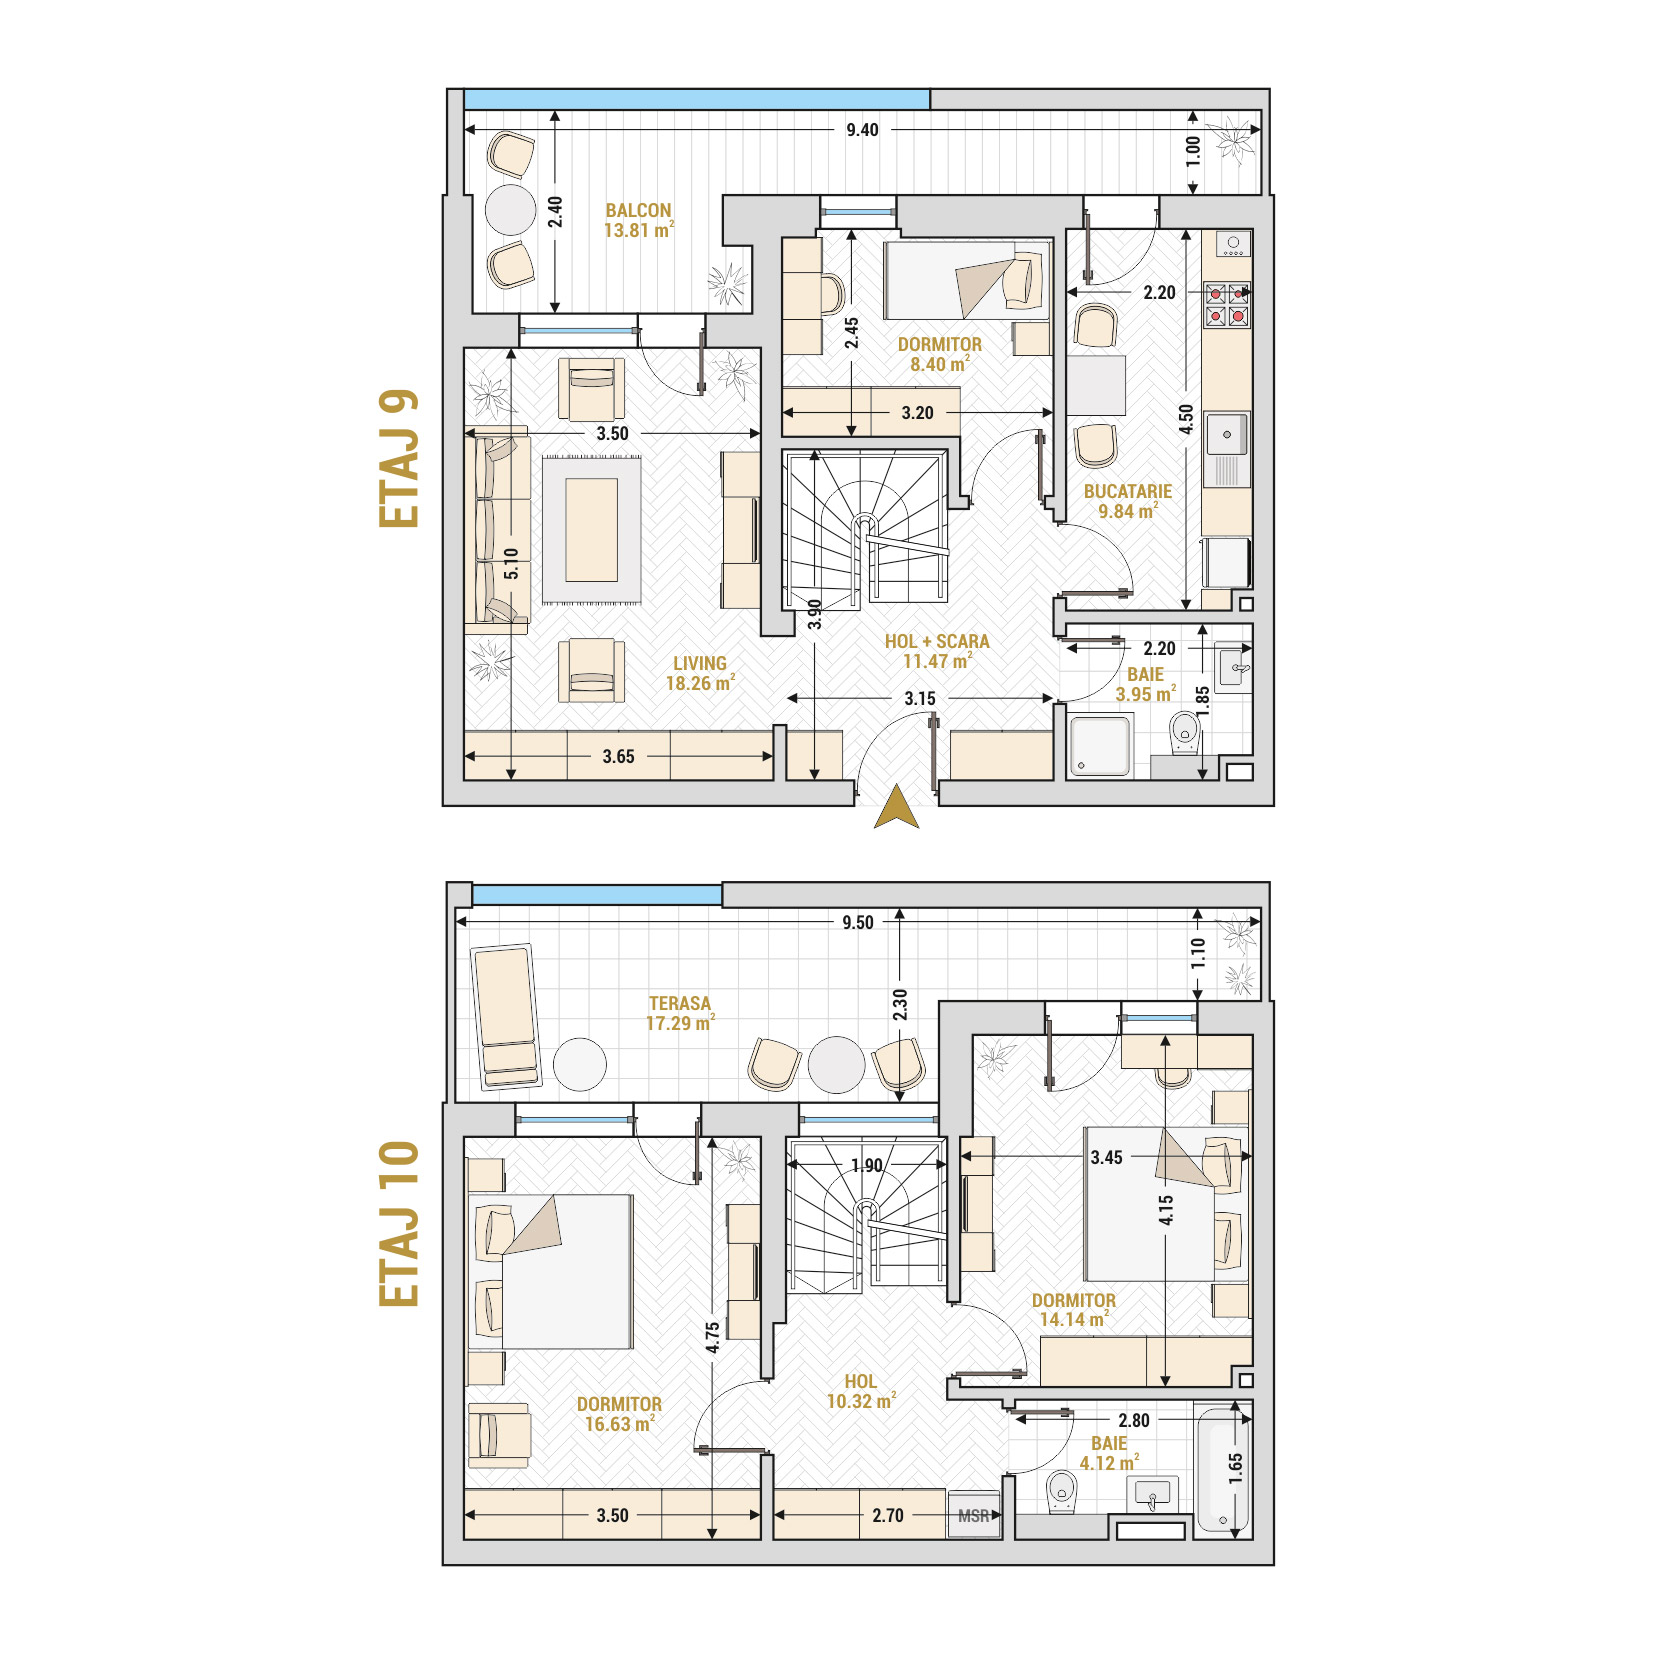 Penthouse 4 Camere Tip 2 Corp 3 - Drumul Taberei Residence - Apartamente de vanzare Bucuresti - Suprafata utila totala - 128.23 mp